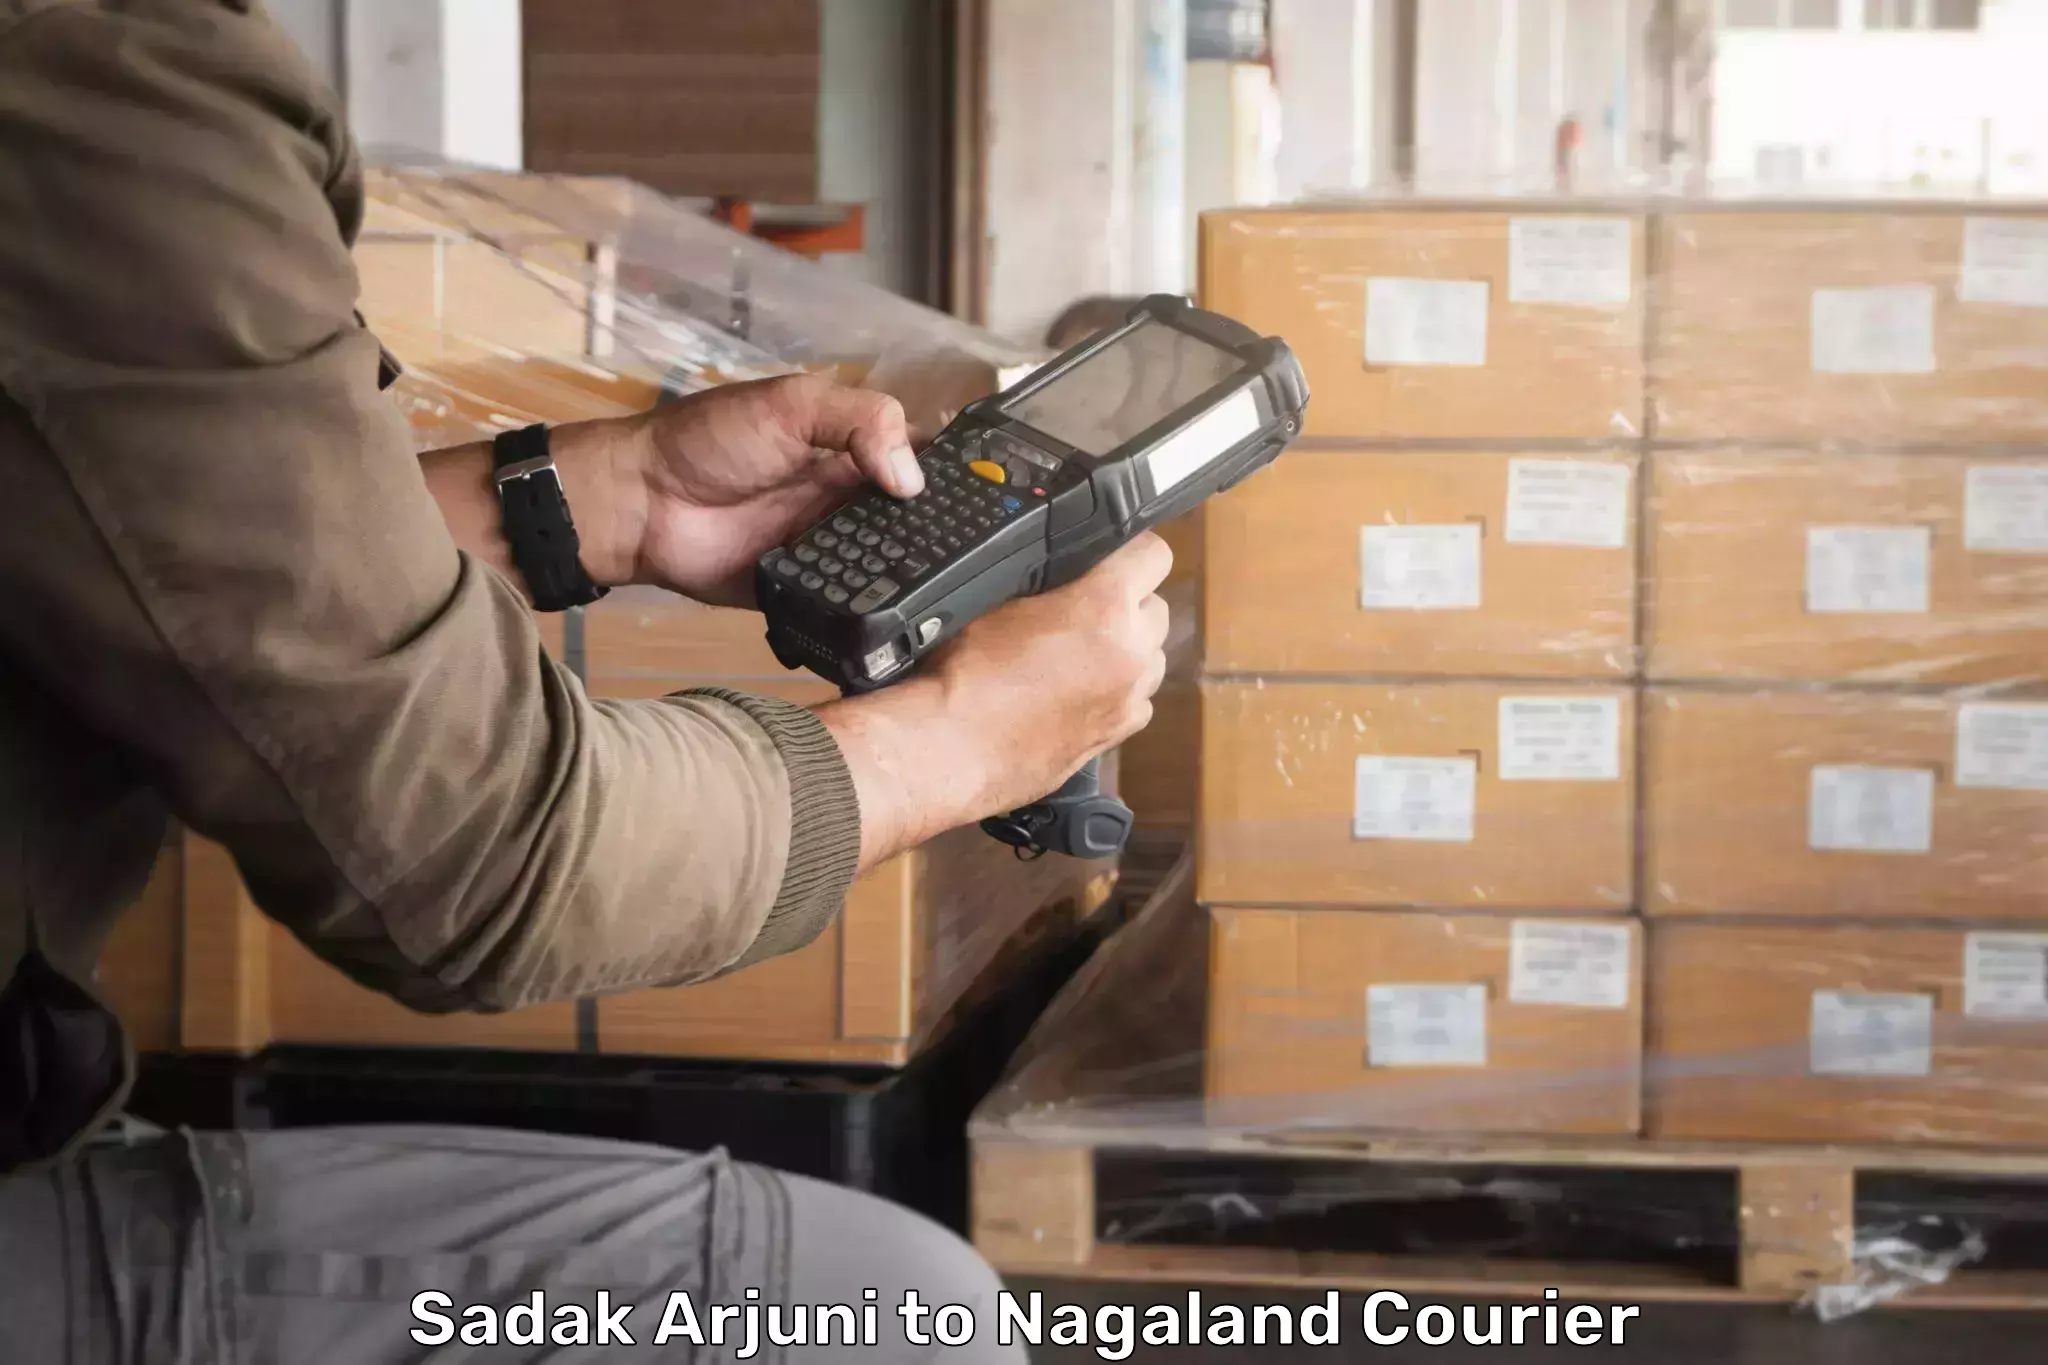 User-friendly delivery service Sadak Arjuni to Tuensang